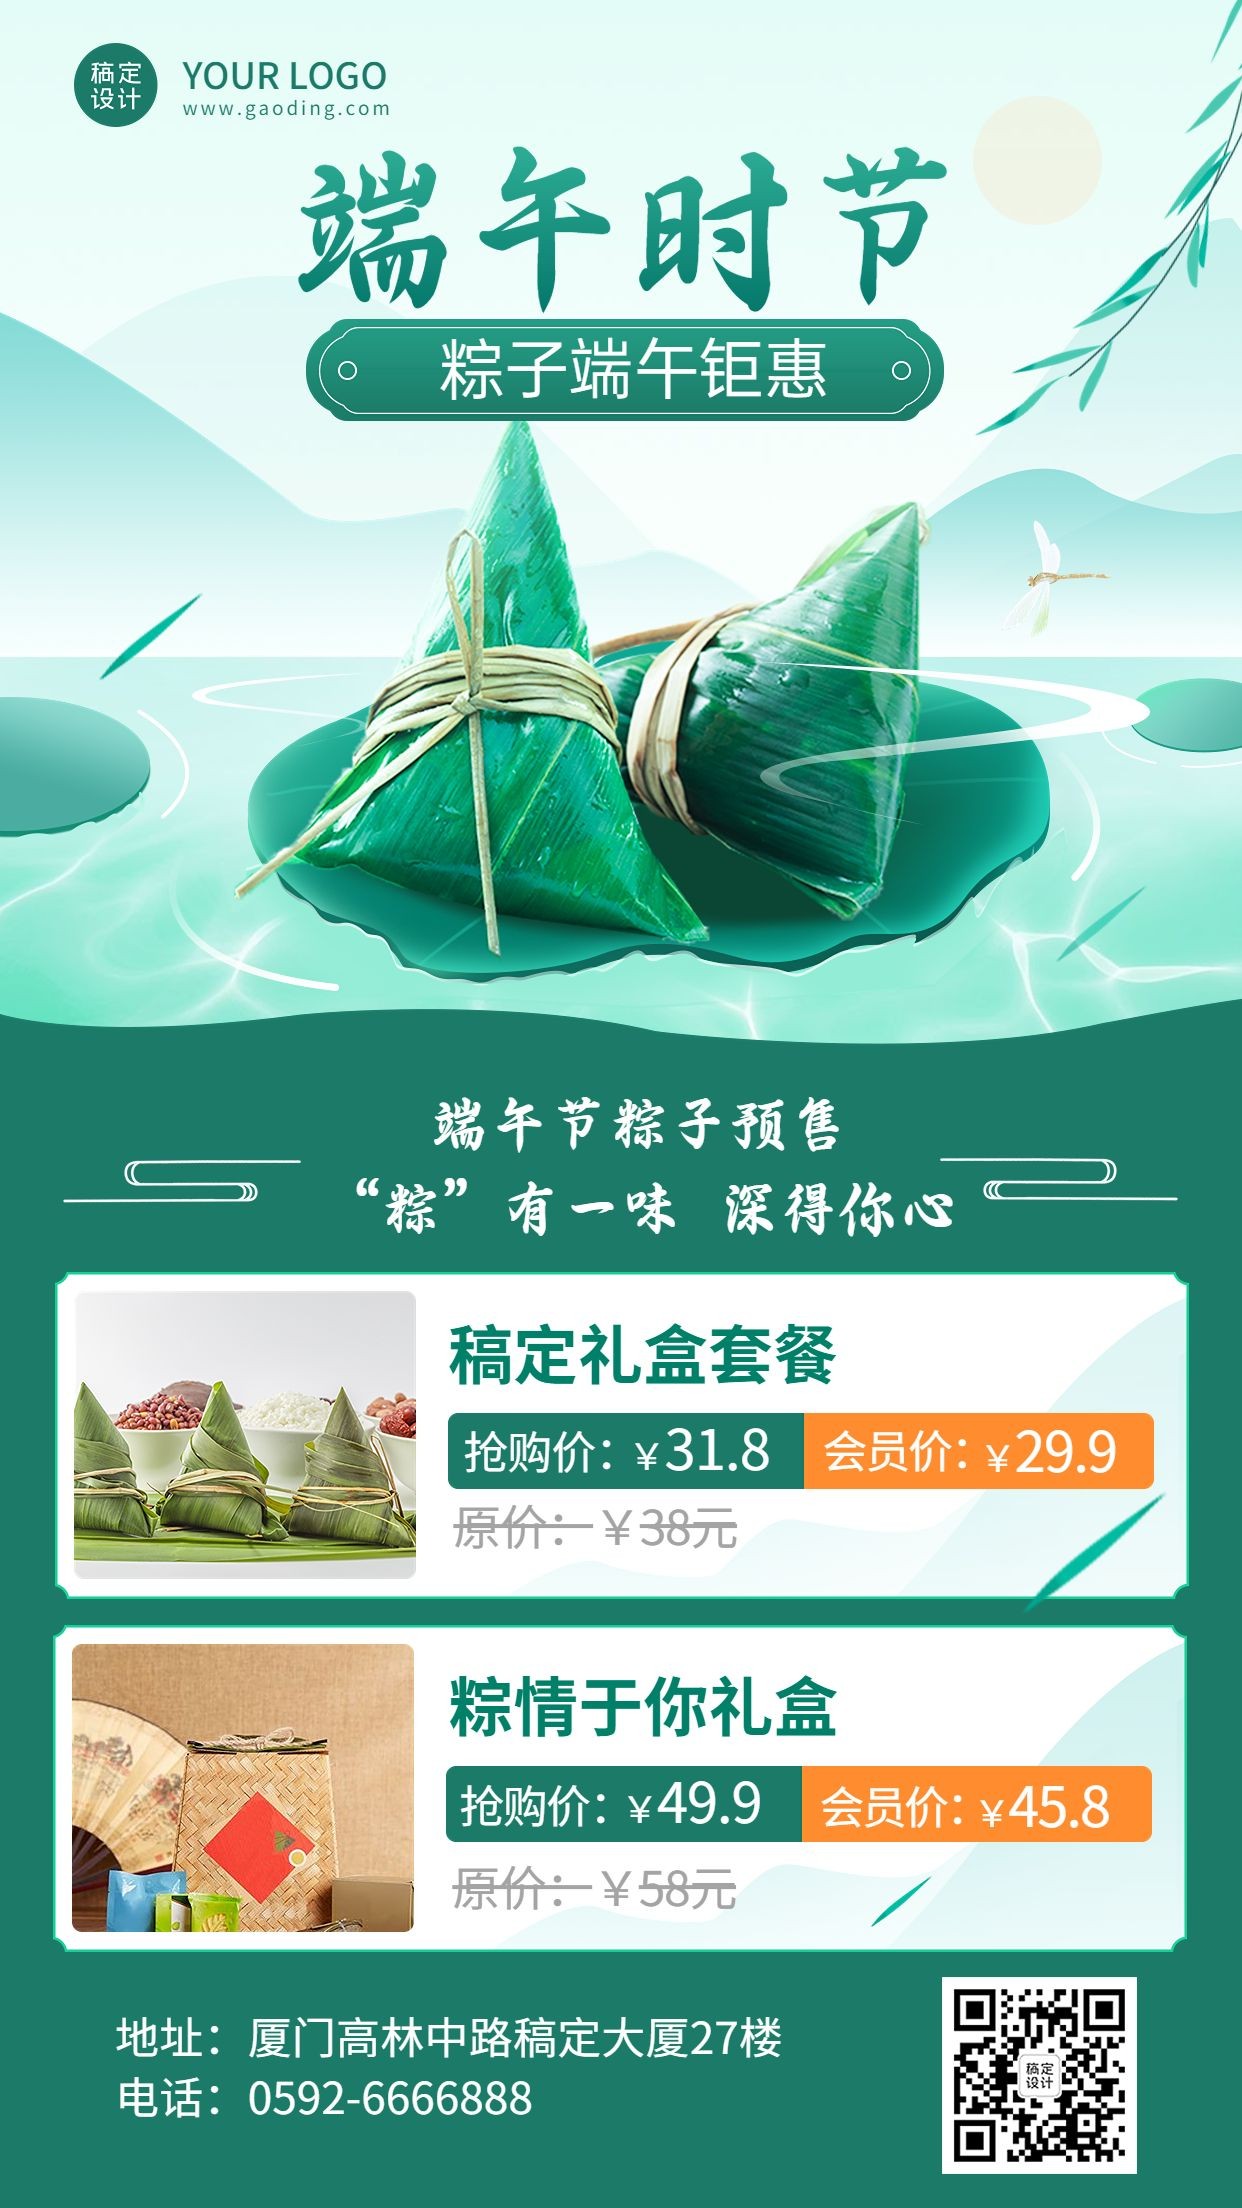 端午节餐饮粽子产品营销手机海报